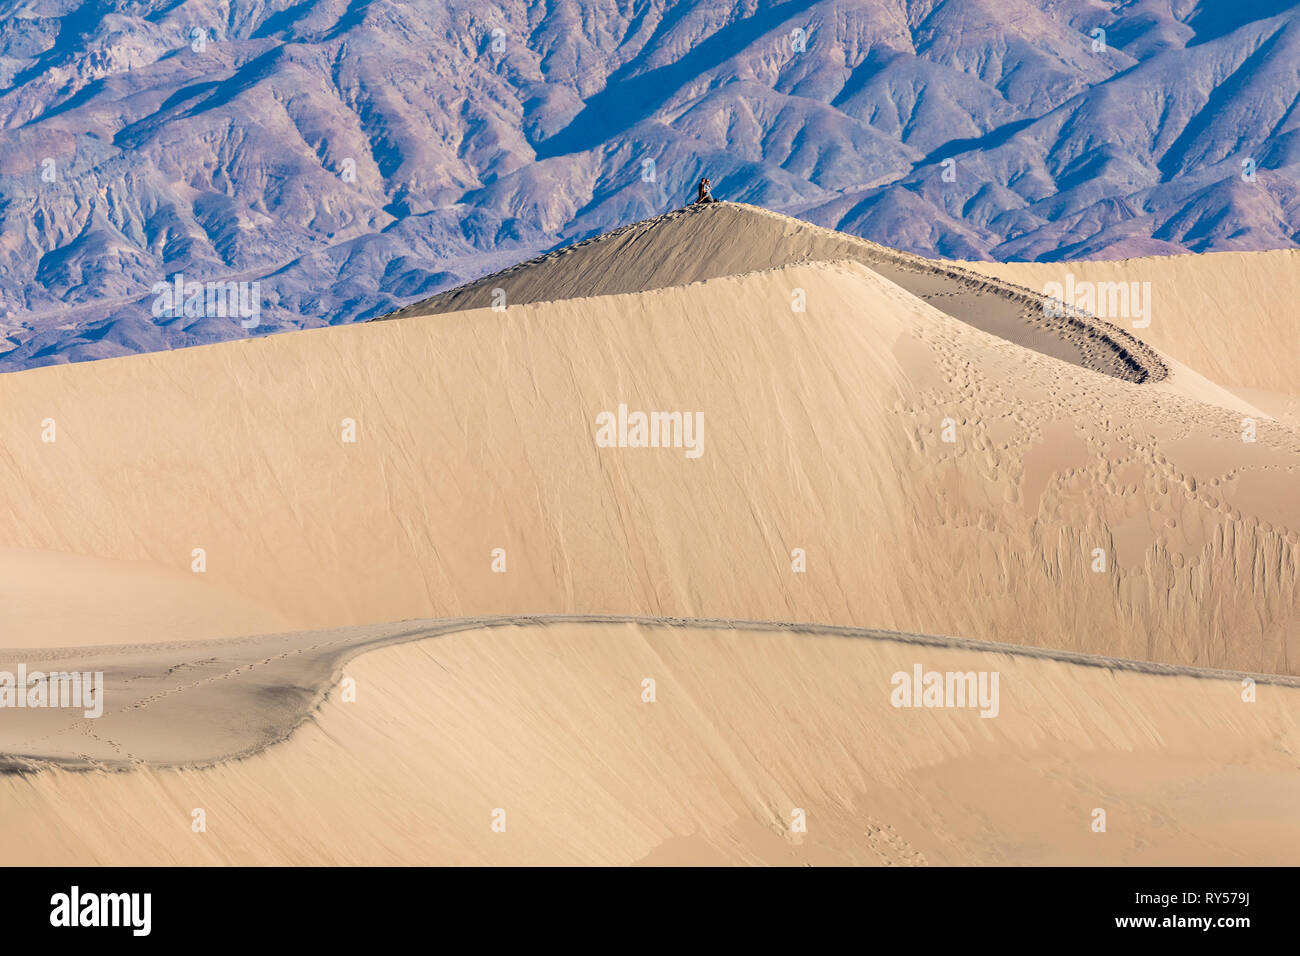 Les dunes de sable de Mesquite Flat sont une vaste zone de dunes de sable bordées de montagnes atteignant 100 pieds et un endroit de choix pour les randonneurs, les photographes et le surf sur sable. Banque D'Images